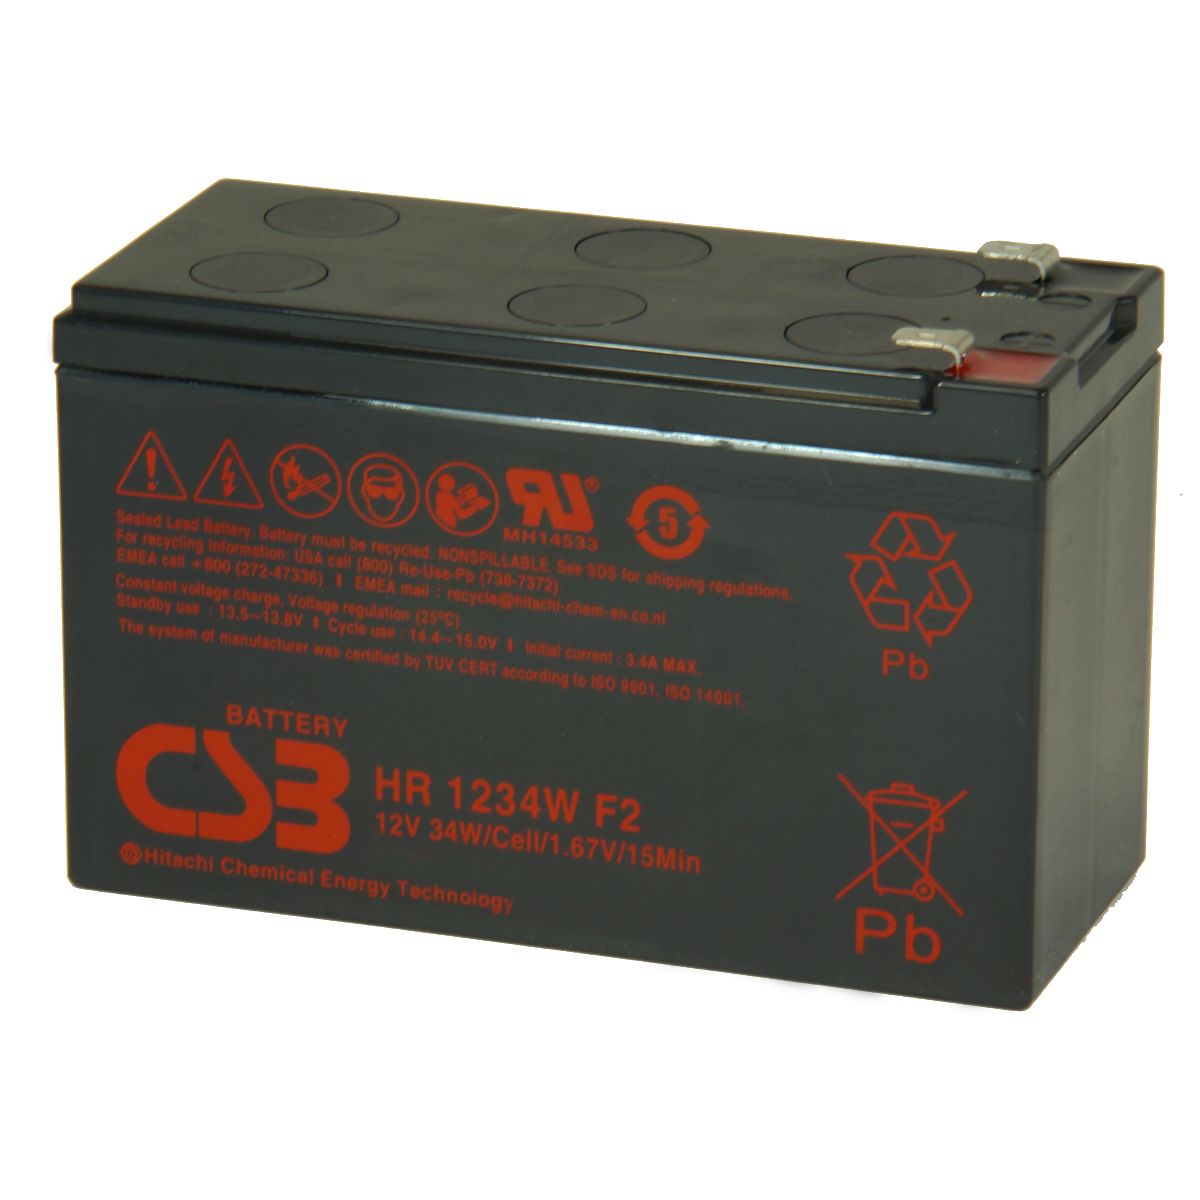 Gp 1272 f2 12v. CSB 1272 f2. Батарея для ИБП CSB gp1272. Аккумуляторная батарея для ИБП CSB ups12460 f2 12в, 9ач. Аккумуляторная батарея для ИБП CSB GP 1272 f2 12v 7.2Ah.